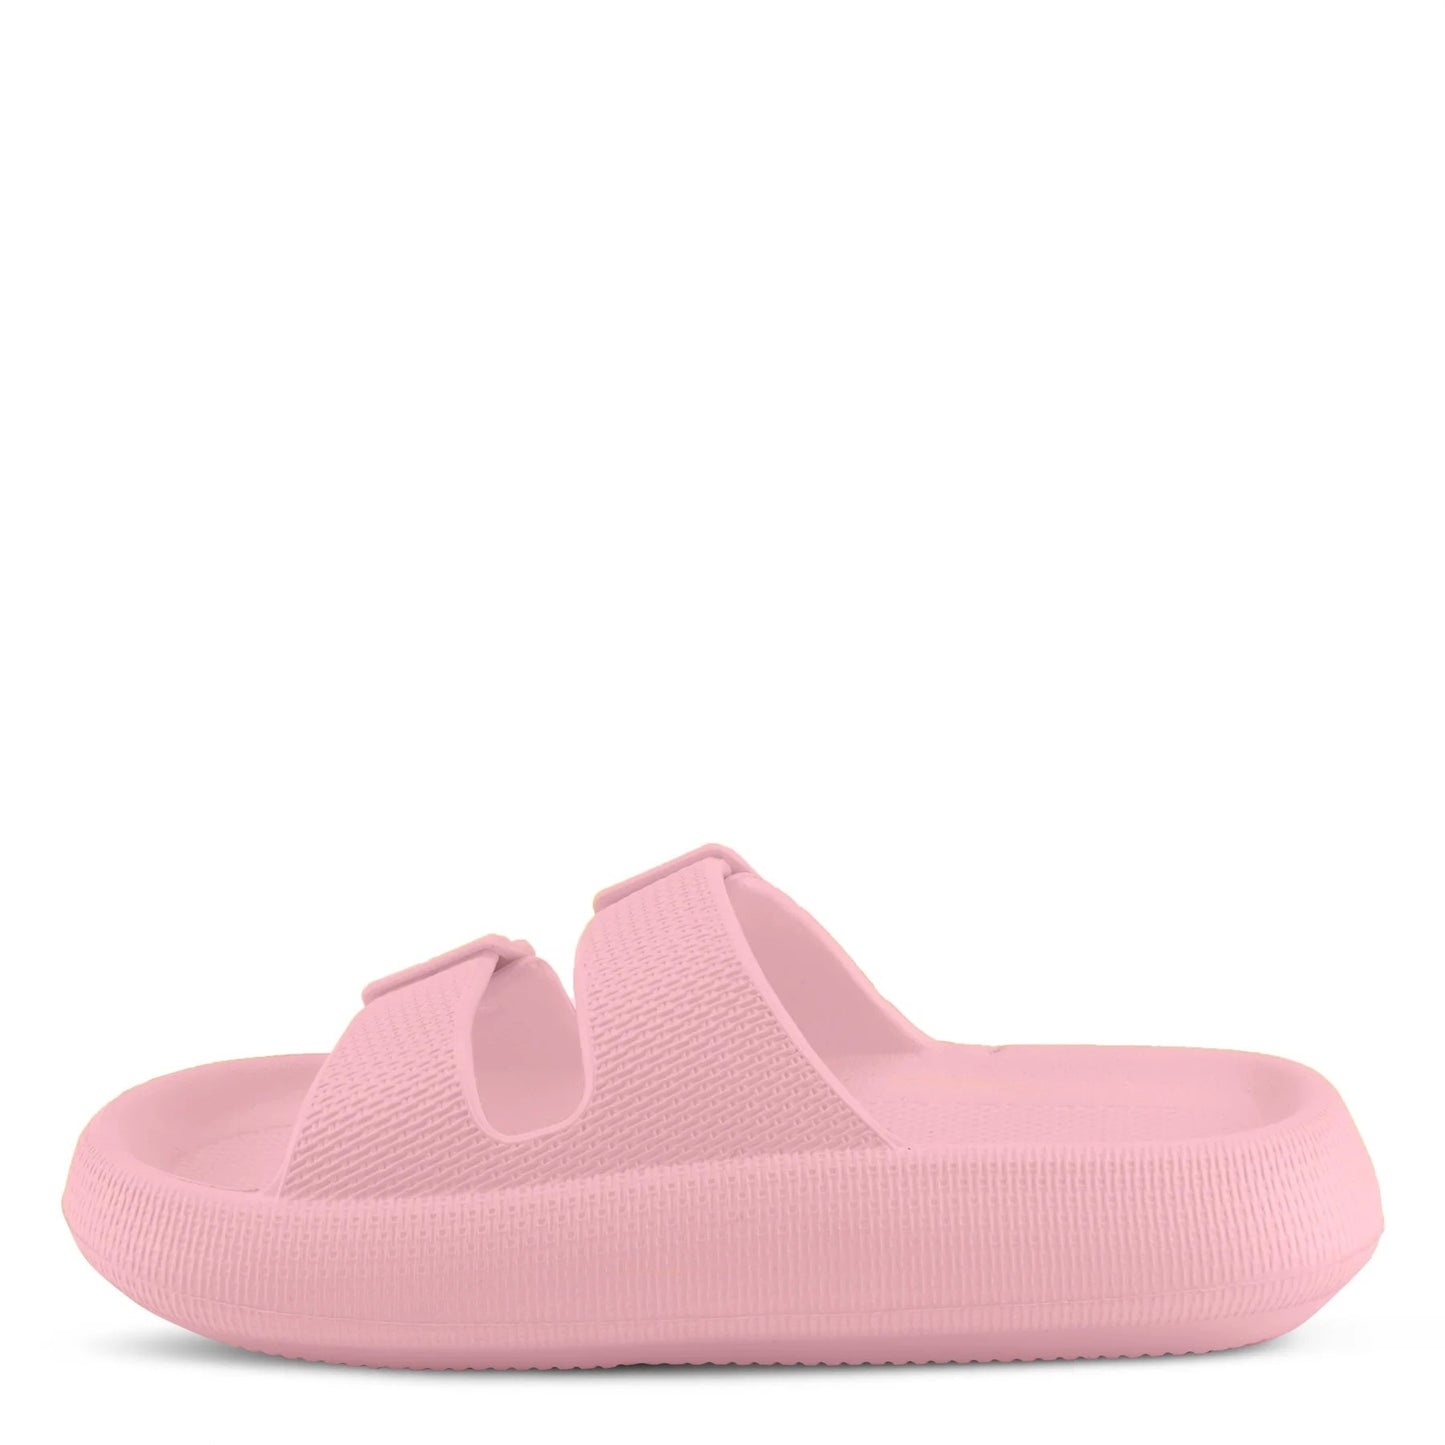 Flexus - Bubbles - Light Pink - Waterproof Sandal